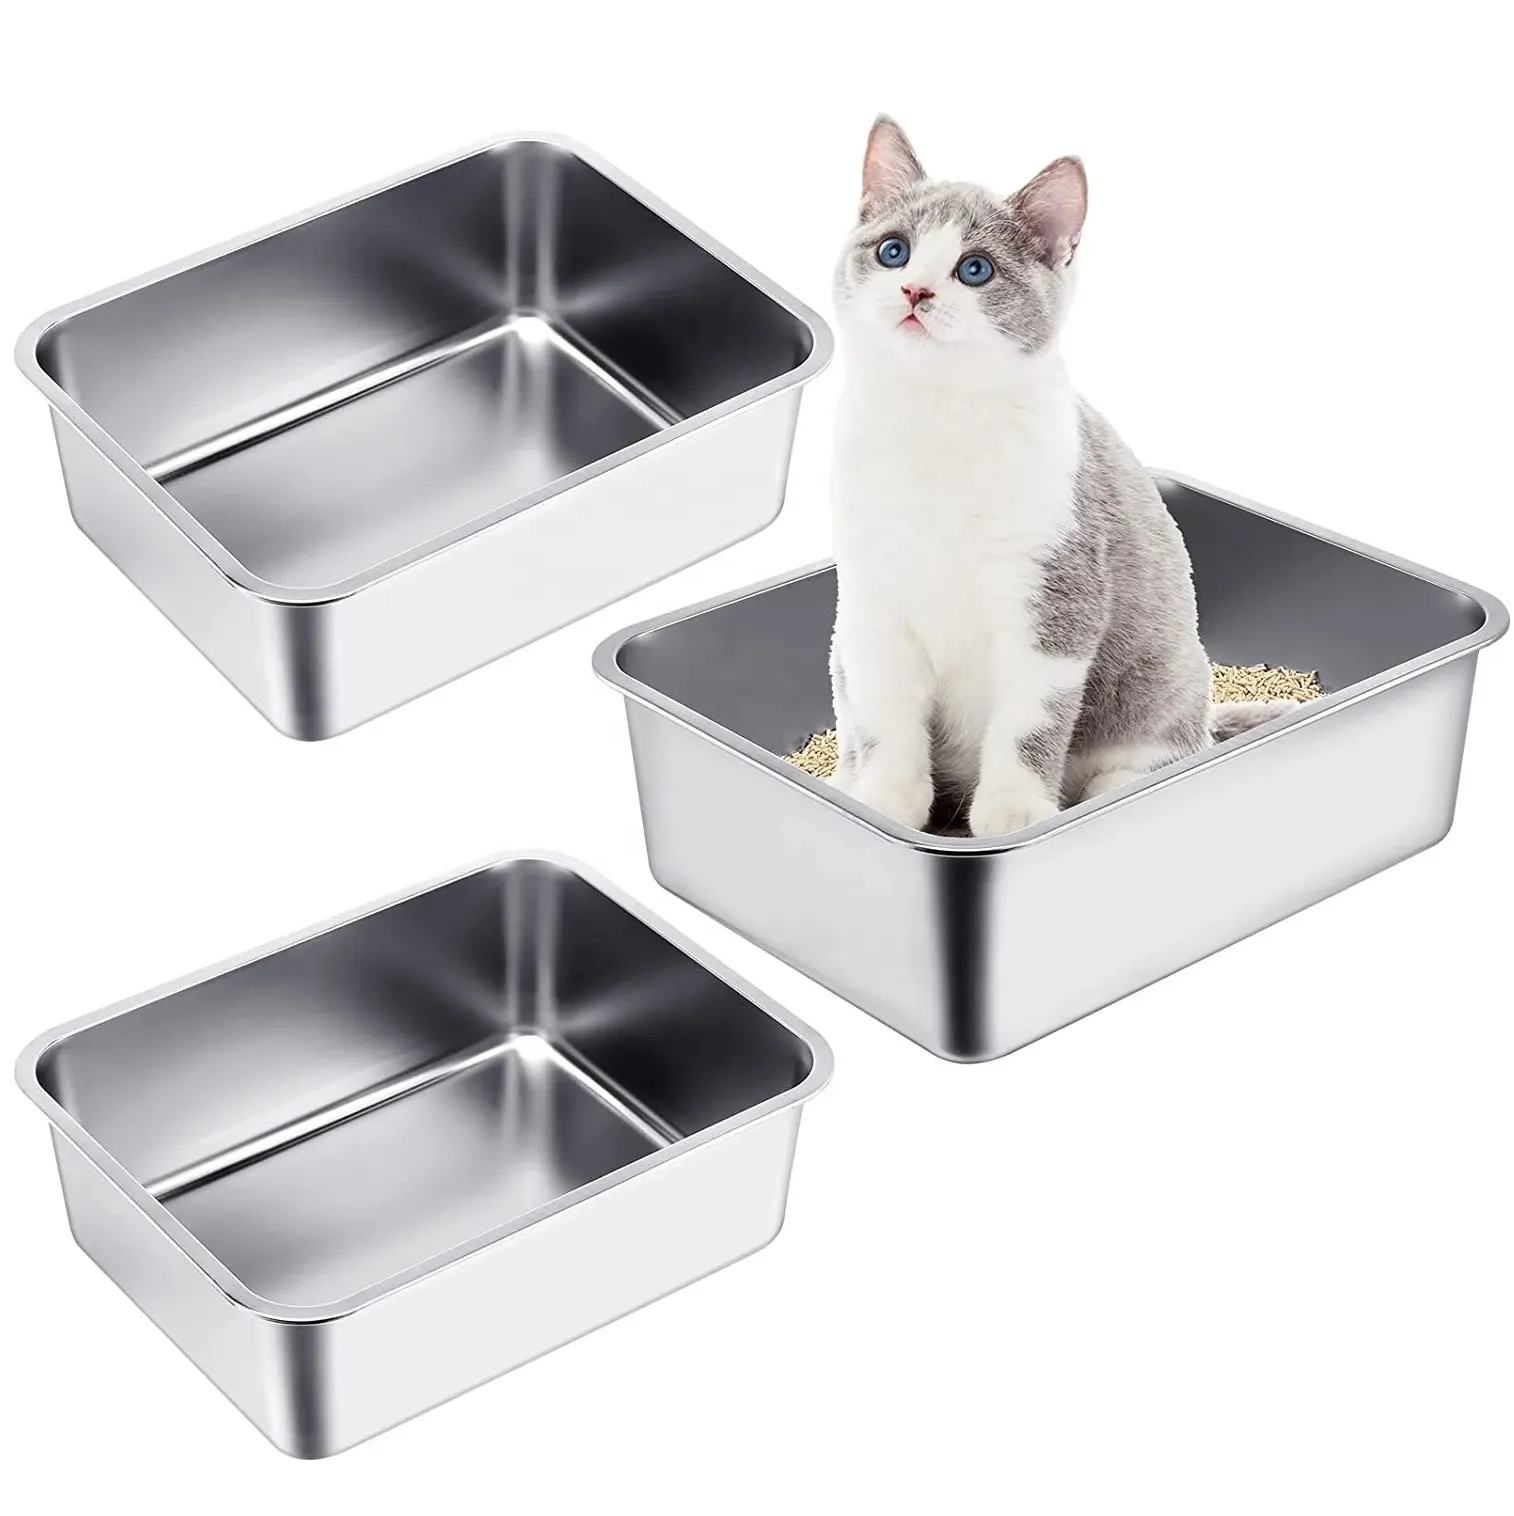 猫用の新しいステンレス鋼のトイレ、高辺の焦げ付き防止トイレお手入れが簡単防錆耐久性のある猫のトイレ